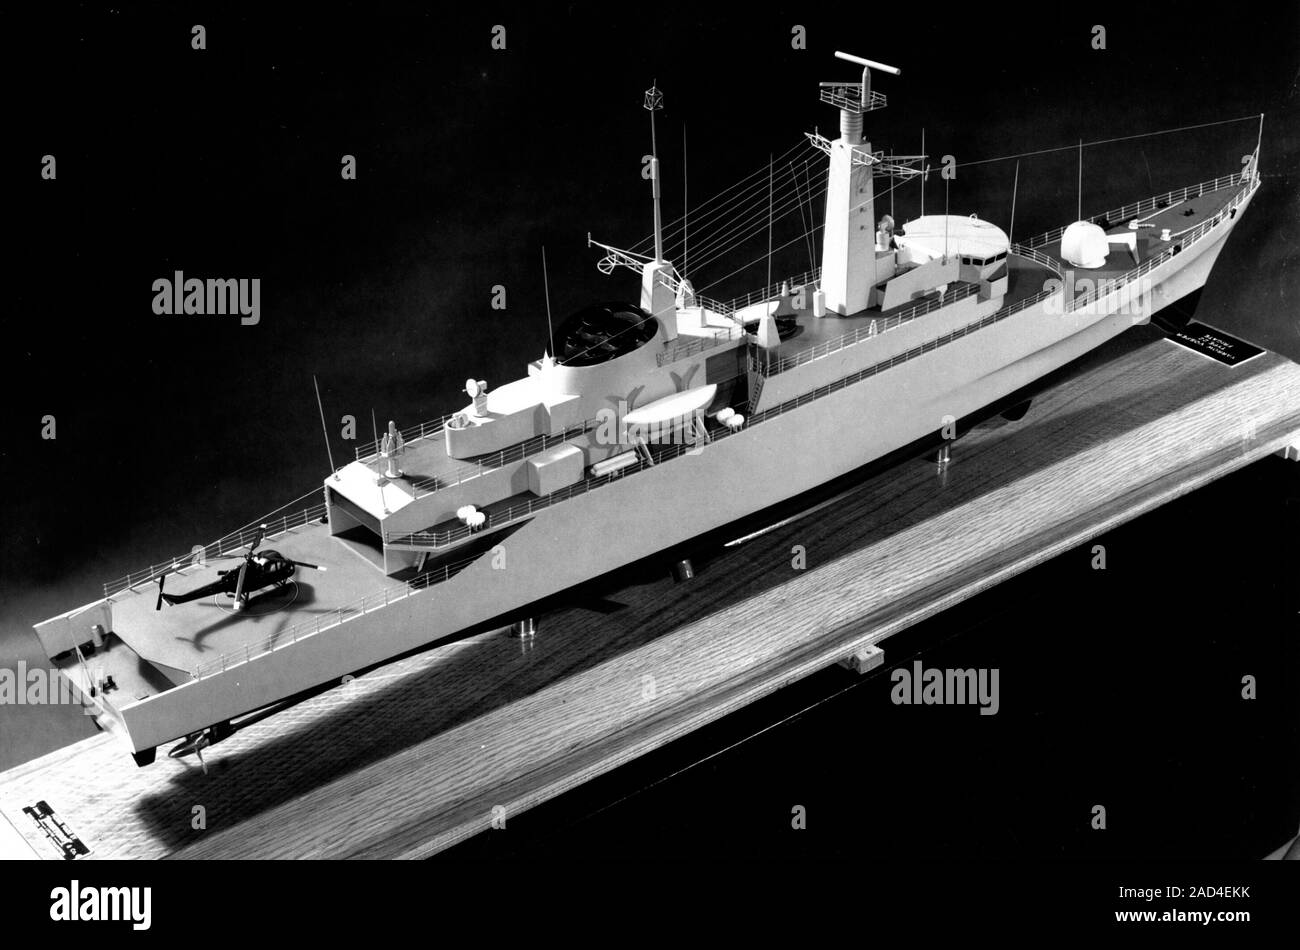 AJAXNETPHOTO. 1968. WOOLSTON, ENGLAND - Typ 21 - Typ 21 FREGATTE FREGATTE (Royal Navy AMAZON KLASSE; 384 m breit, 2500 Tonnen, 2 X OLYMPUS UND TYNE TURBINE - COGOG, 34 Knoten.) ANZEIGE MODELL FÜR MARKETING AN DER WERFT VOSPER THORNYCROFT BEZEICHNUNG A TYP 22 SCHAFGARBE - VOSPER FREGATTE. Foto: VTCOLLECTION/AJAXNETPHOTO REF: TYP 21 9300 291268 Stockfoto